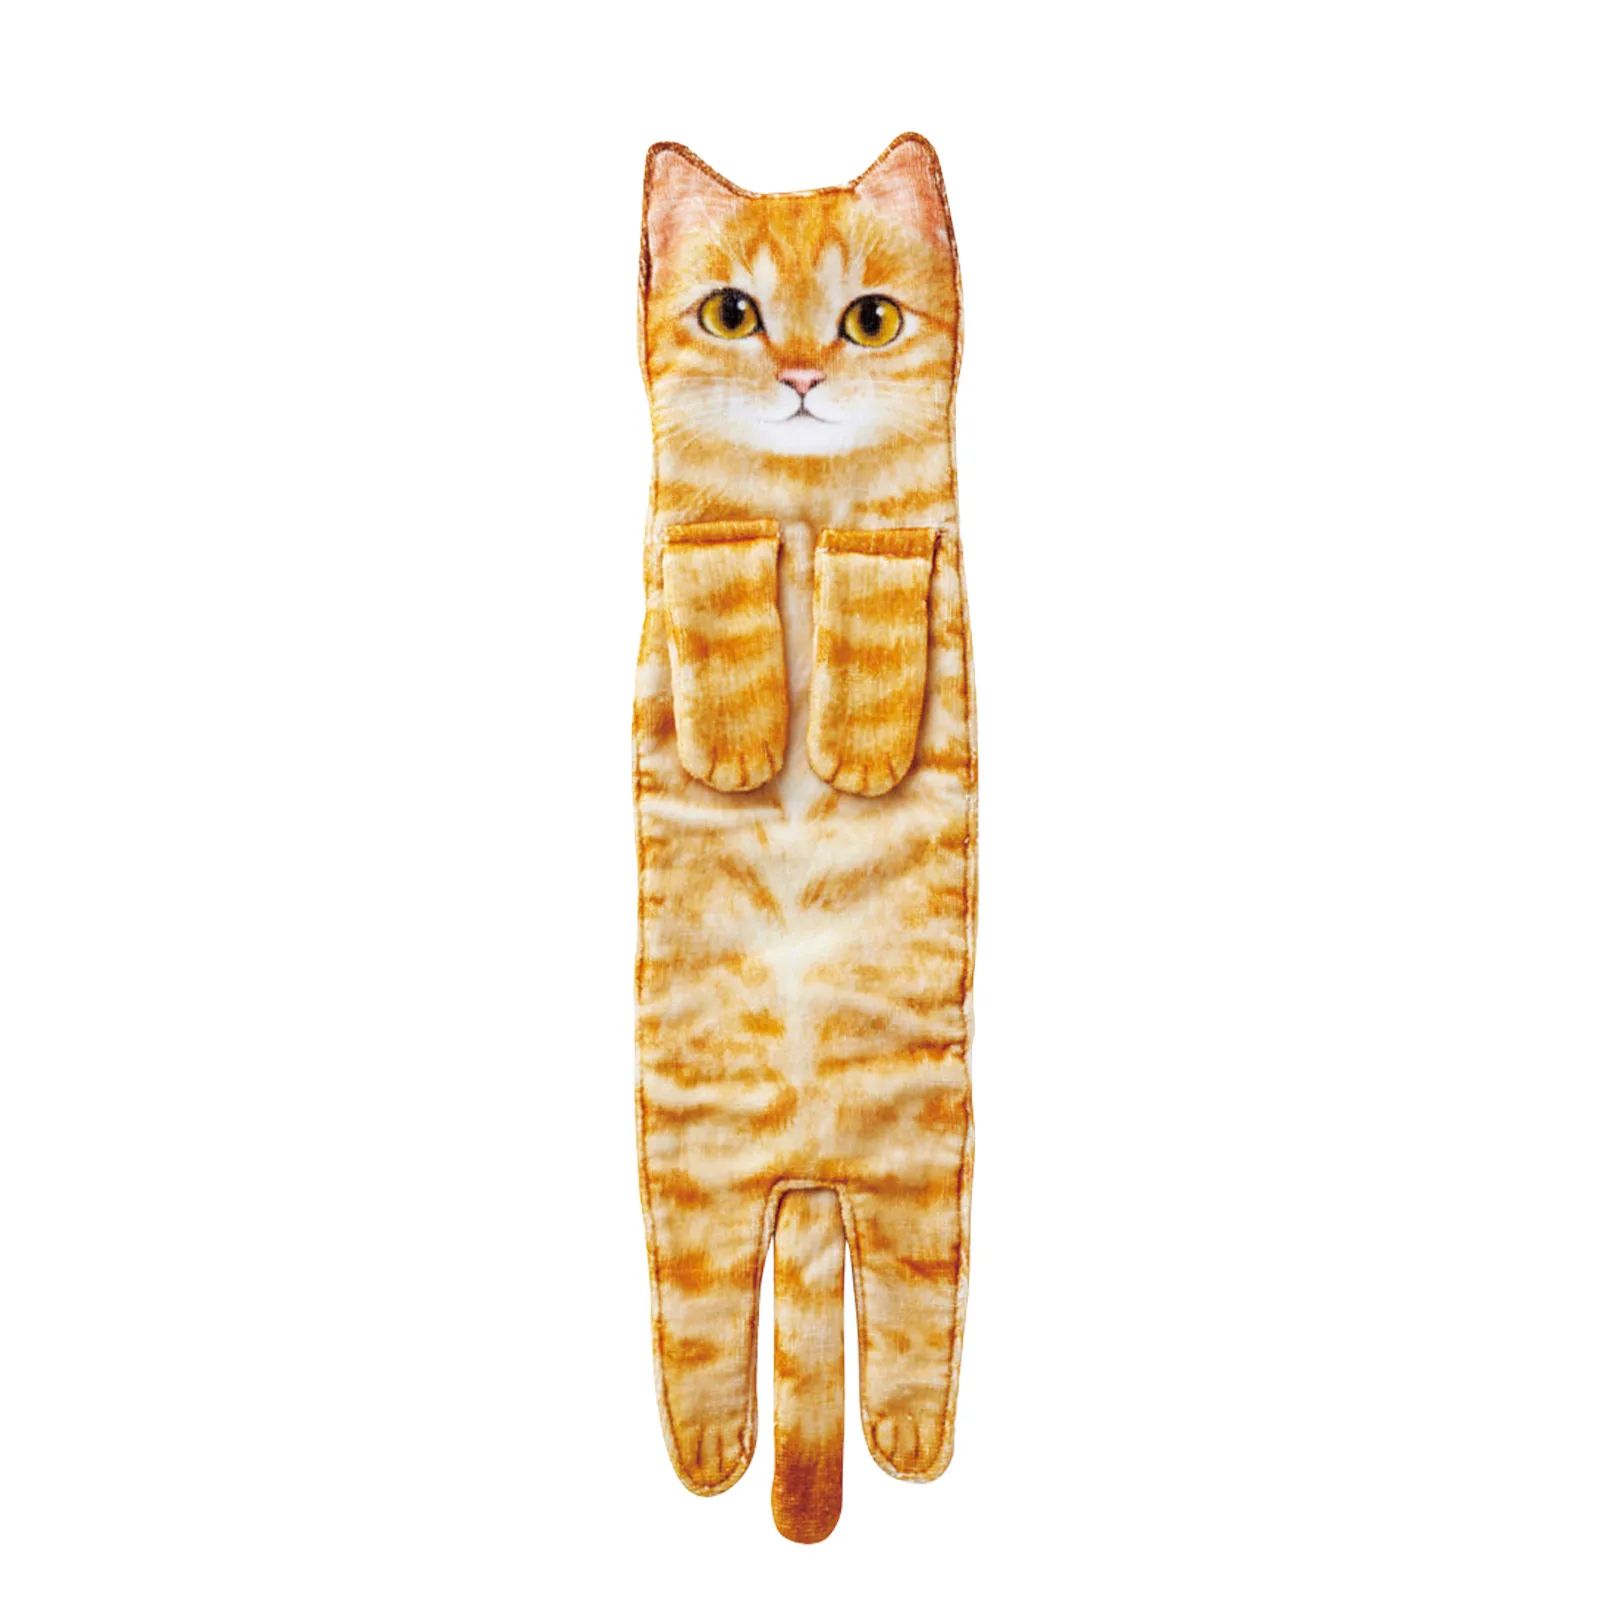 Couleur: orange cat